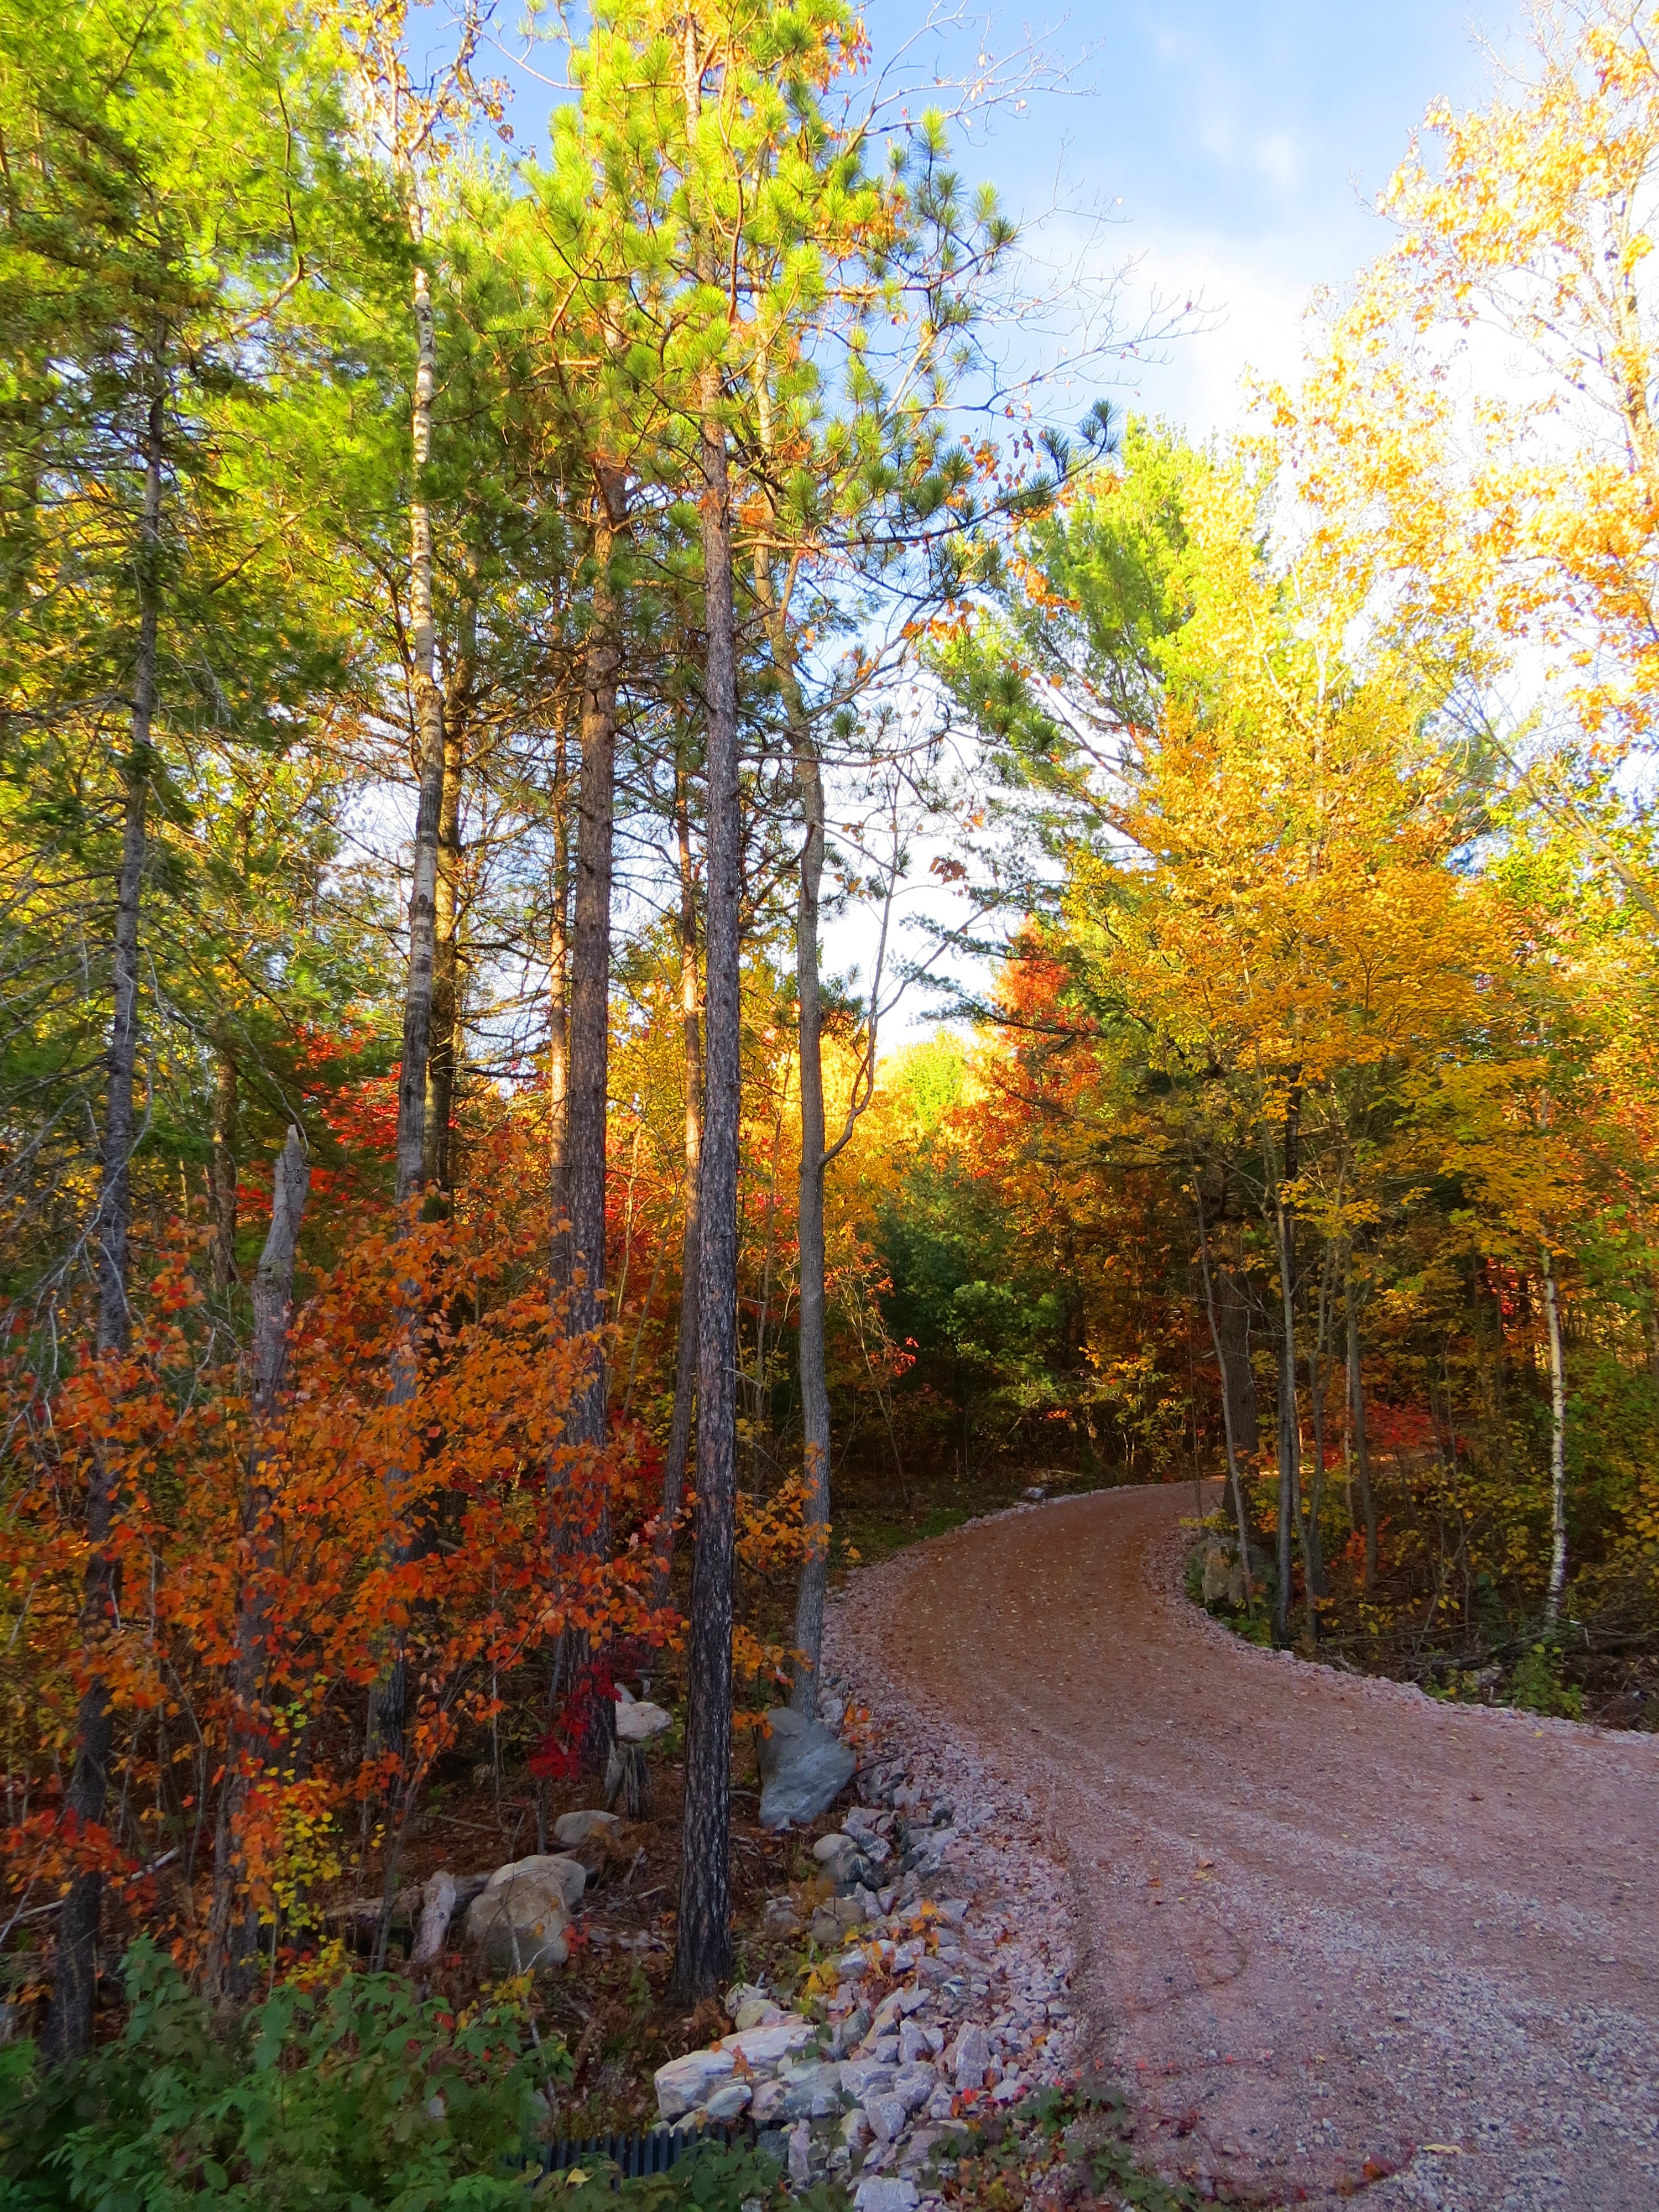 Landscape, Autumn Road, Pathway, Fall, autumn, tree